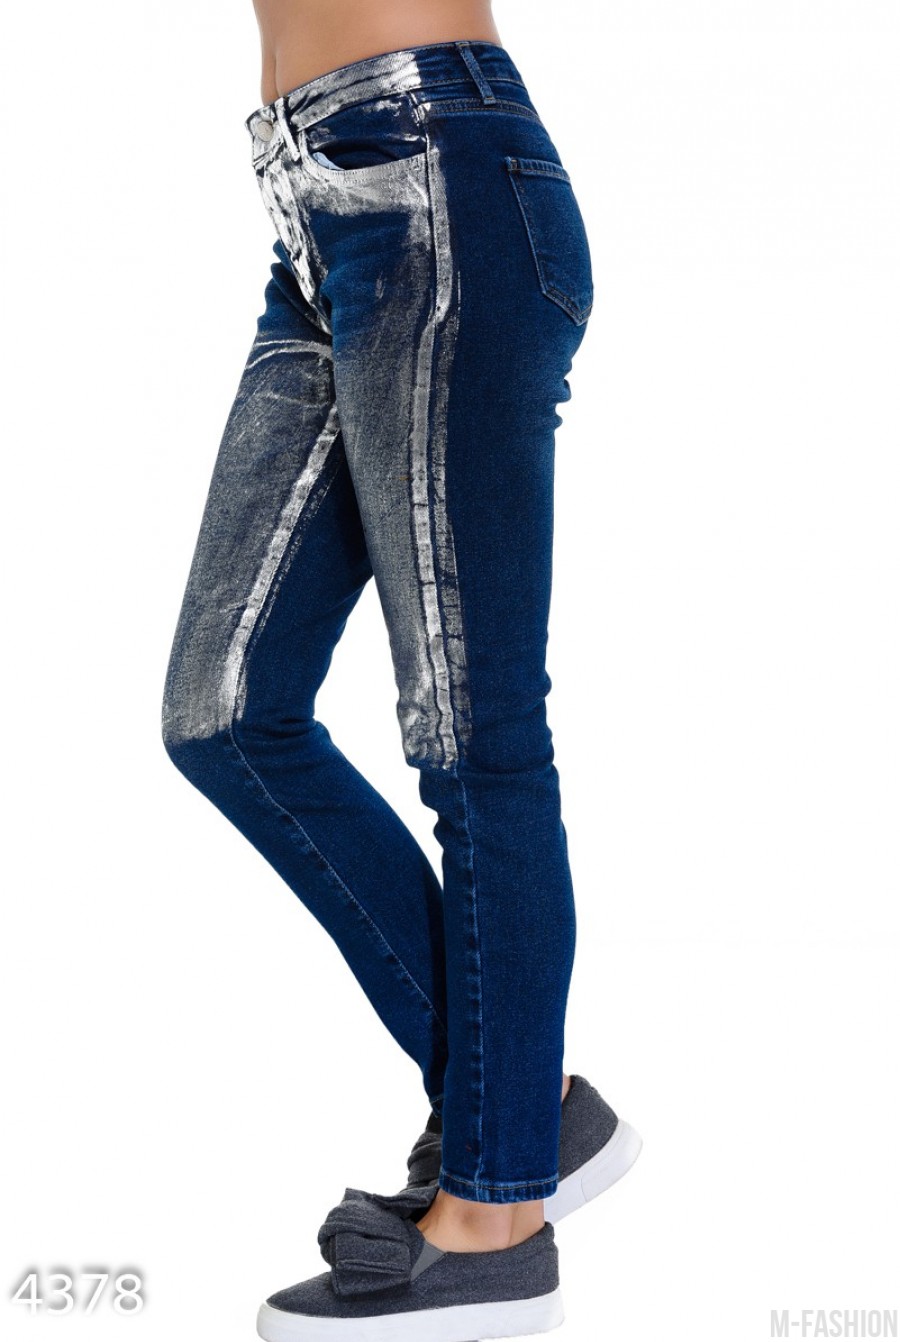 Синие классические джинсы покрытые до колен серебристой краской- Фото 2